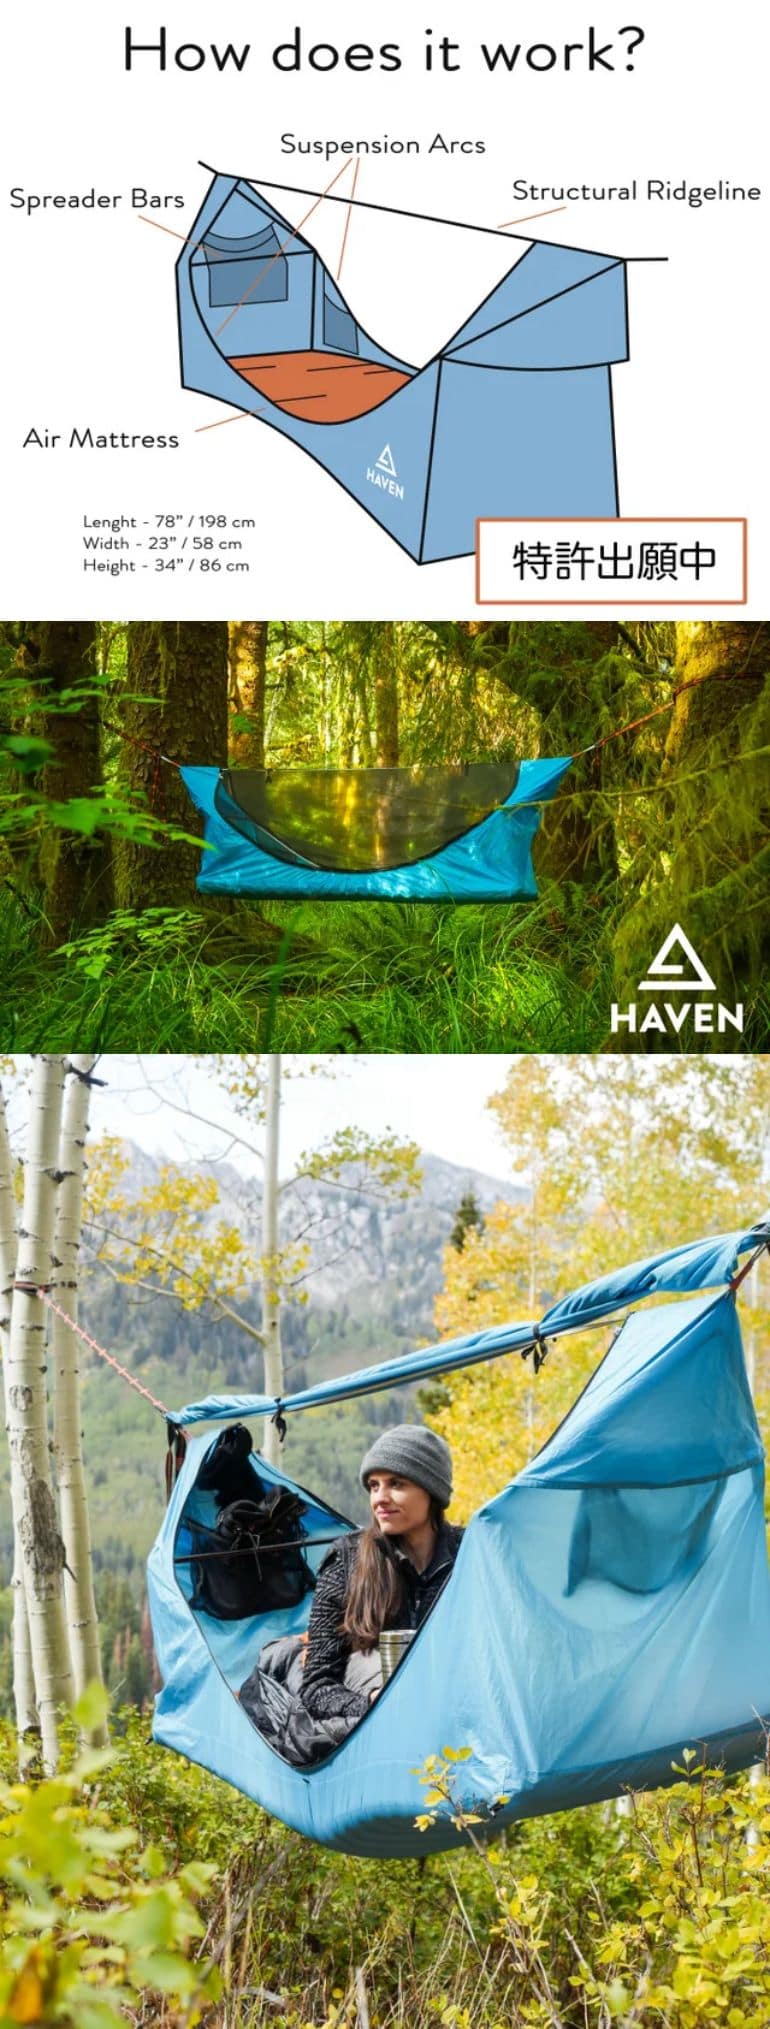 Haven Tent（ヘブンテント）